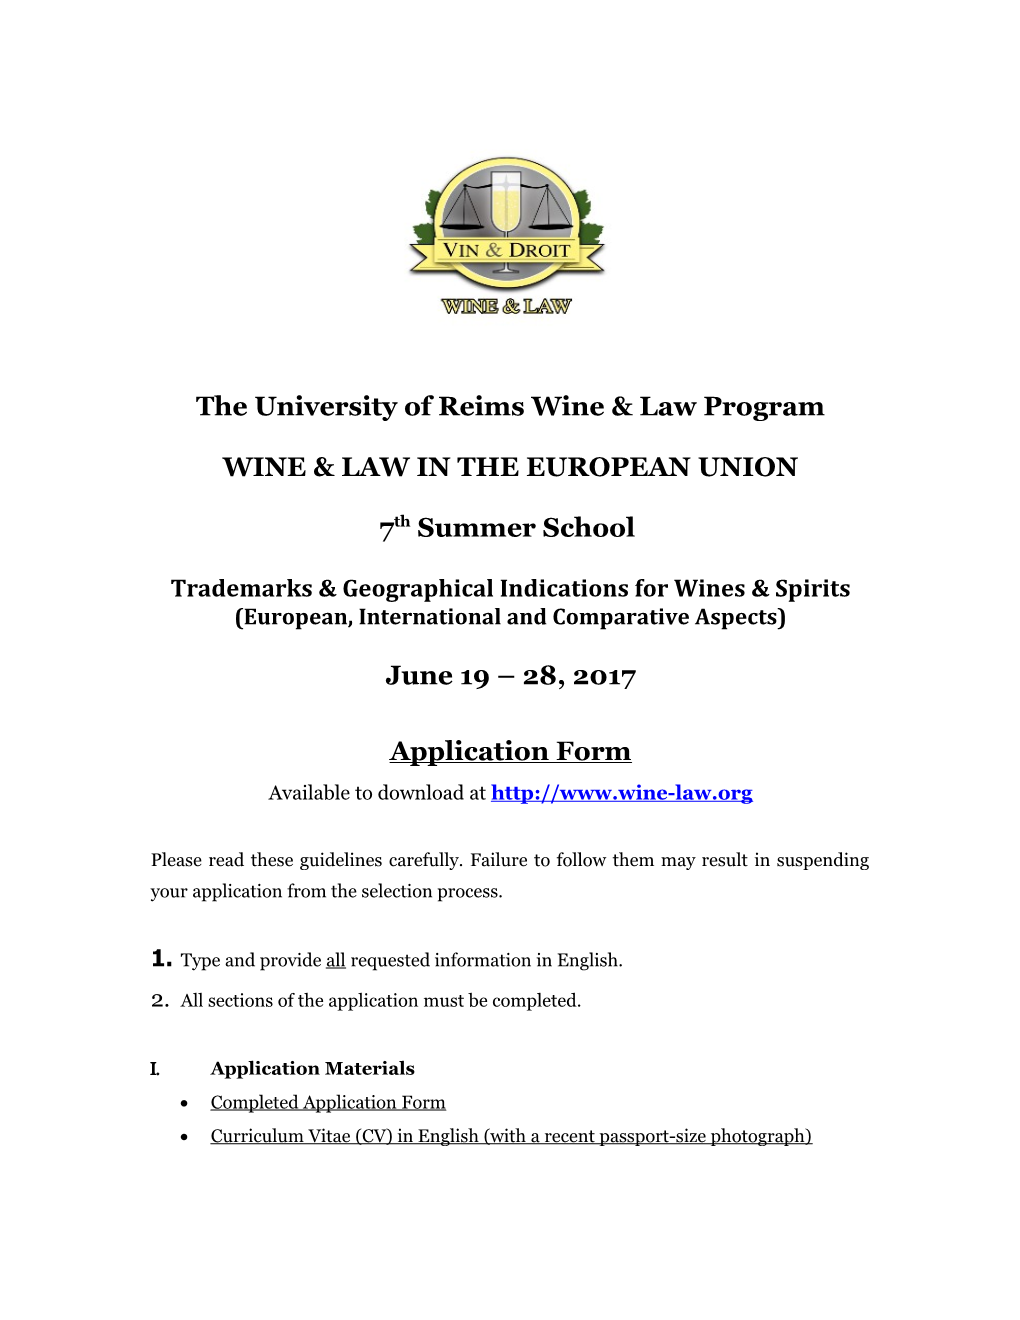 The University of Reims Wine & Law Program